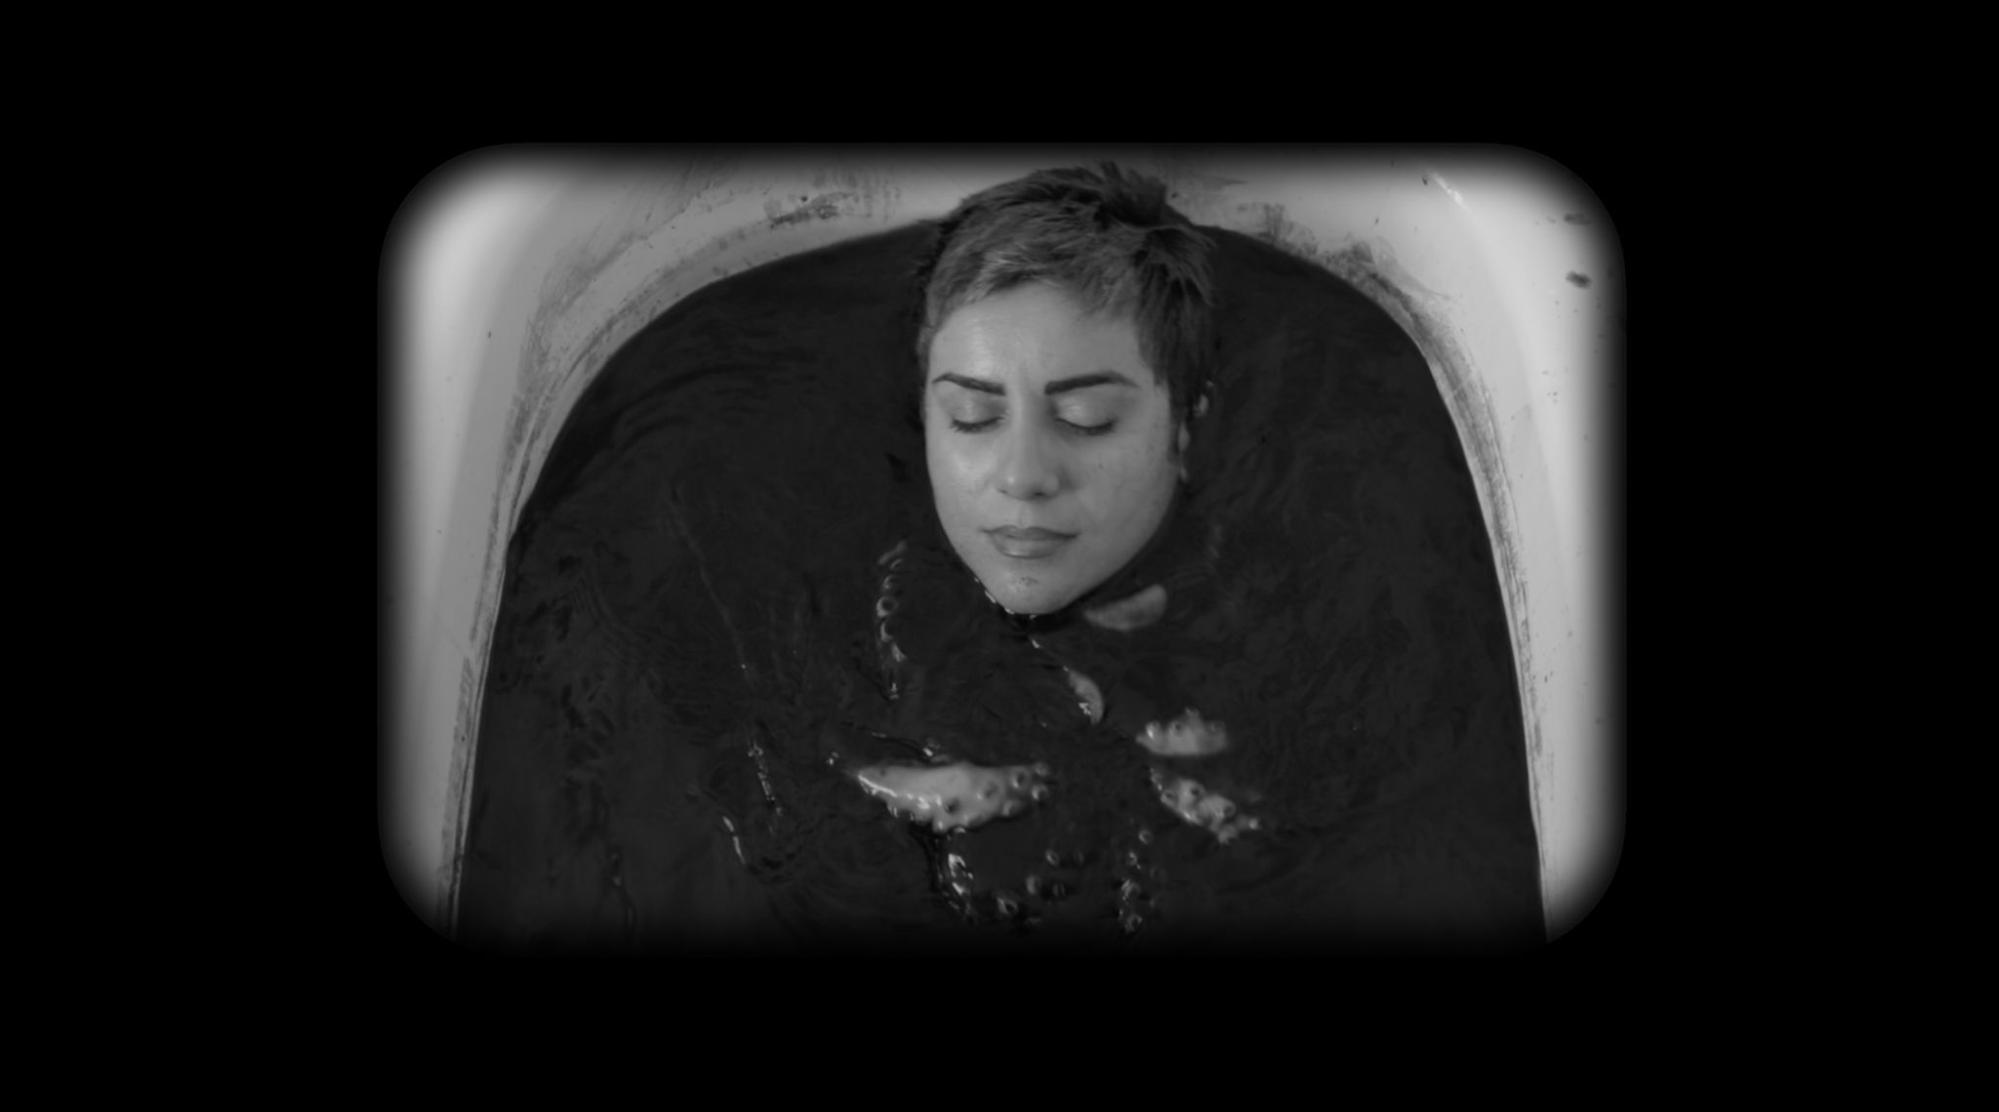  Cena do filme Como você se atreve a desejar algo tão terrível. Na imagem, a cineasta Mania Akbari, uma mulher iraniana de cabelos curtos, aparece em uma banheira. Ela está mergulhada em um líquido escuro com um polvo em seu colo. O retrato está em preto e branco.